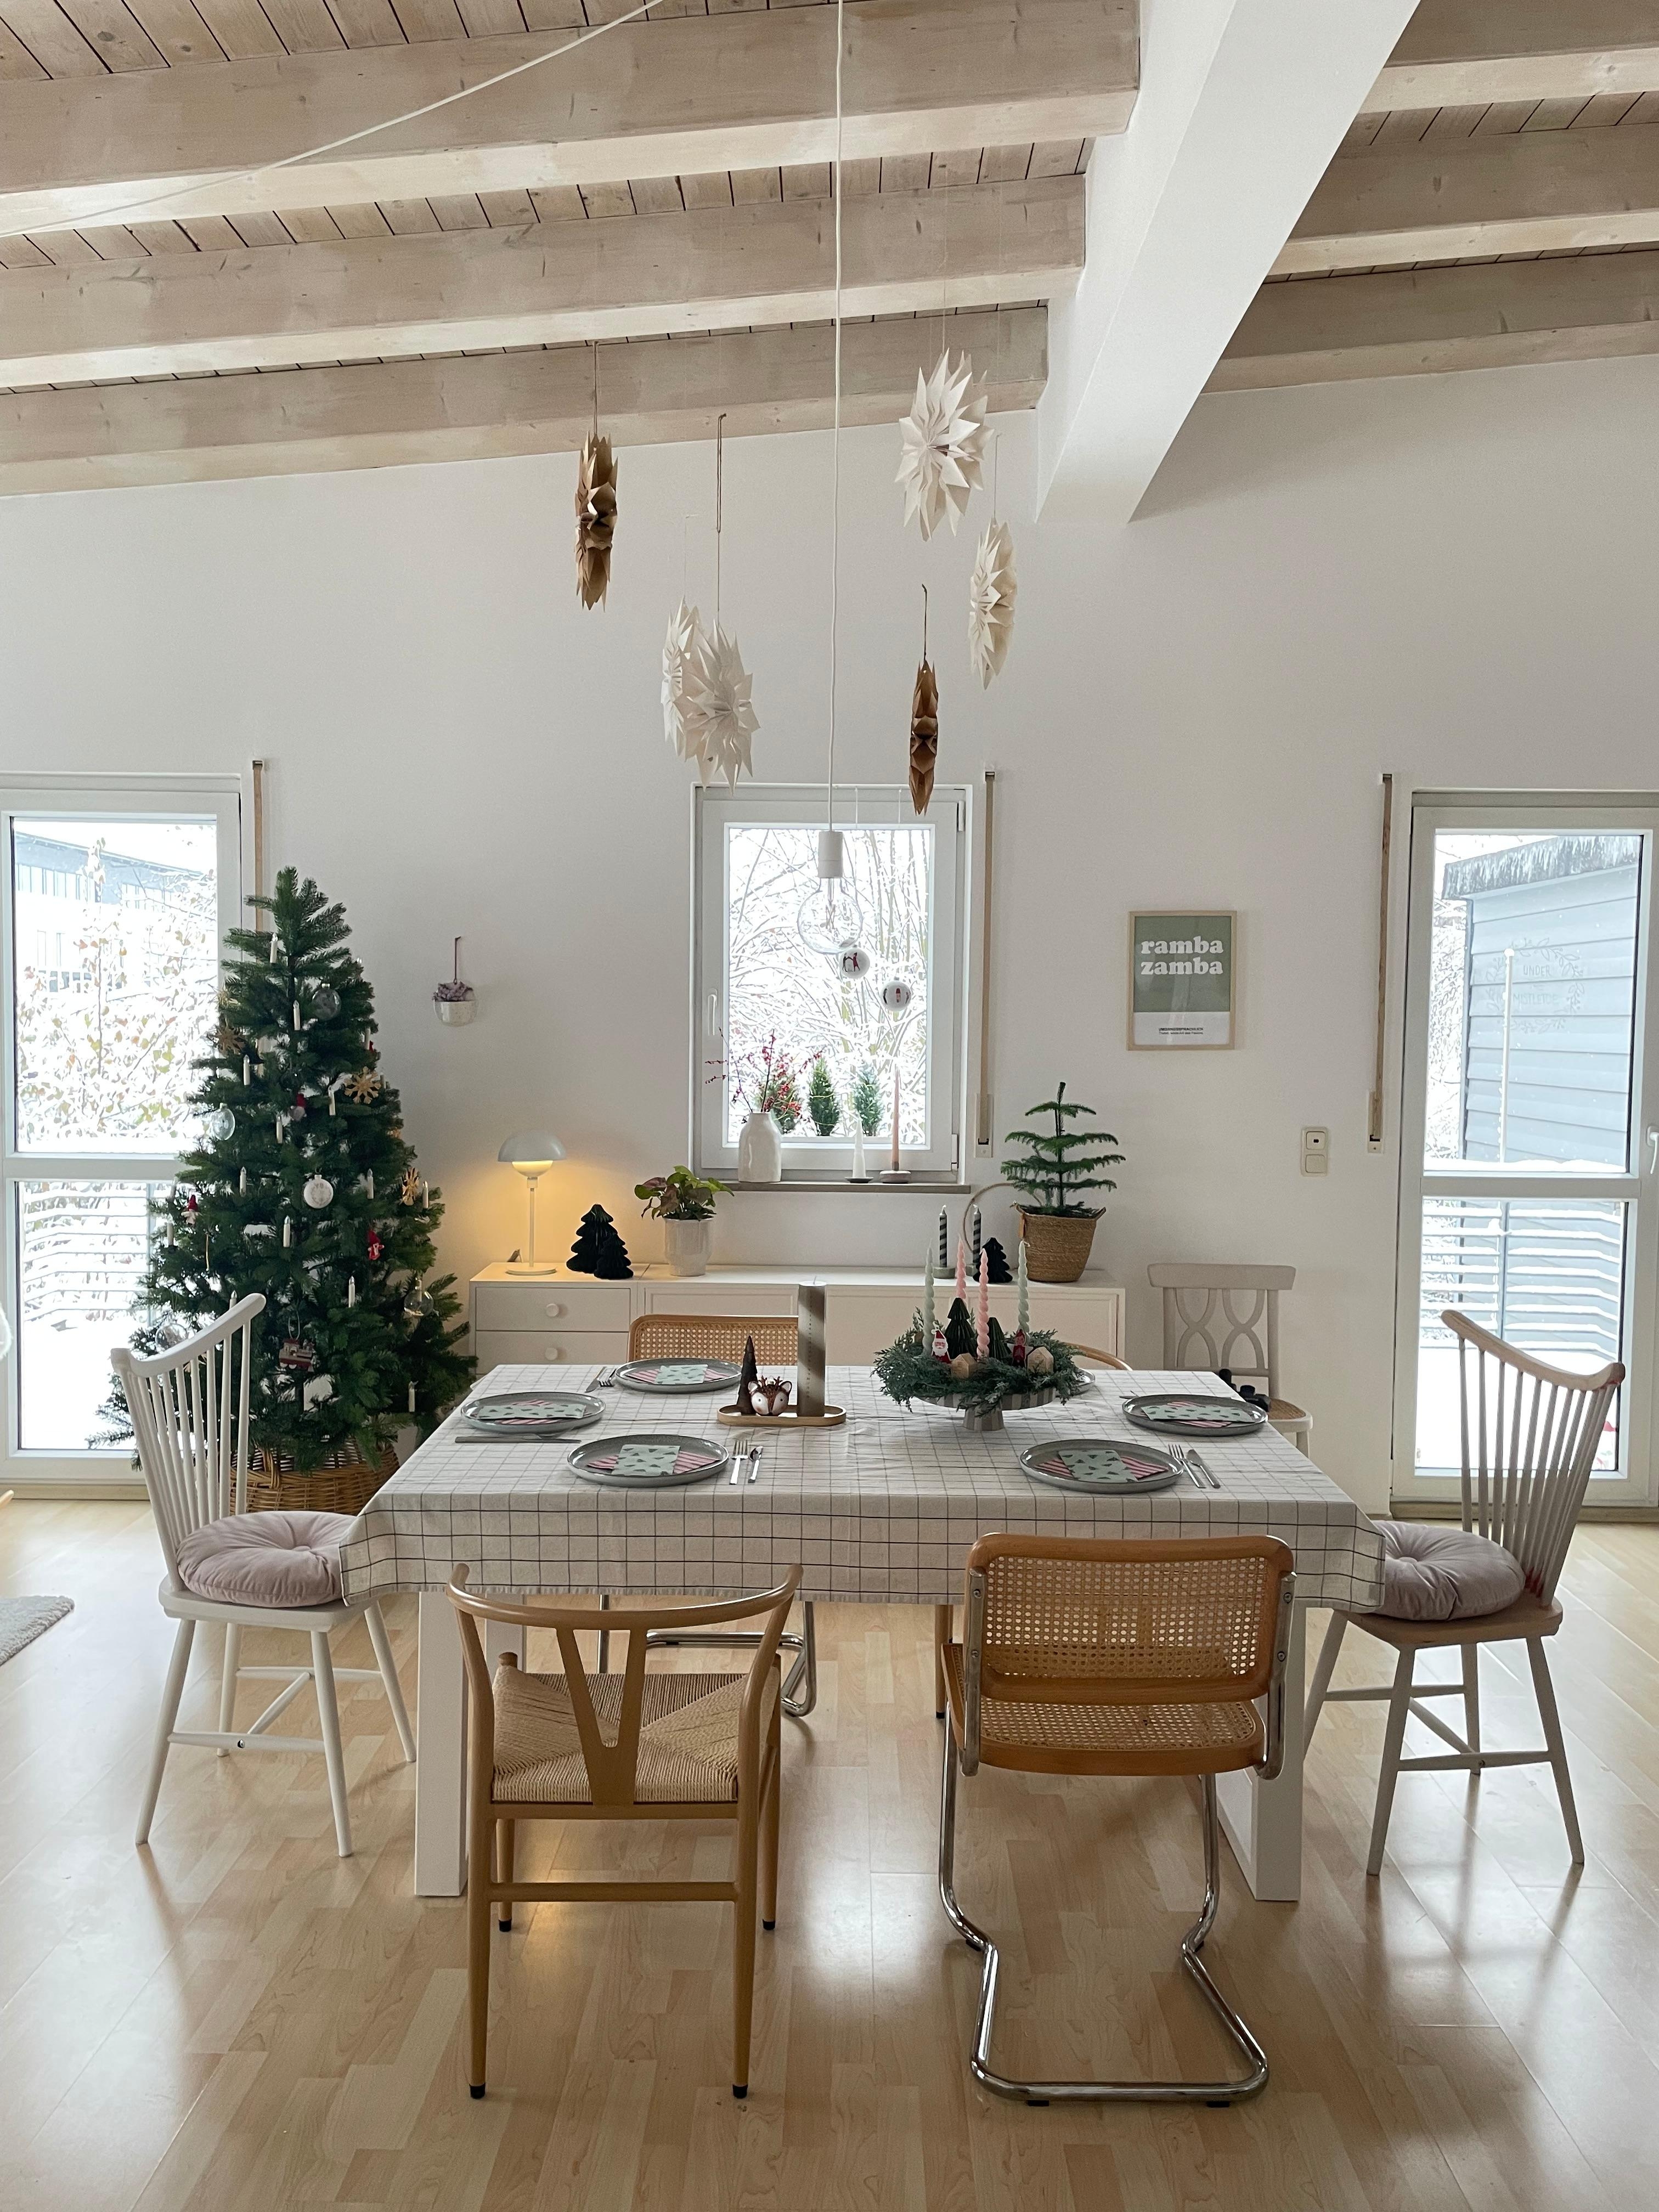 Sternenliebe
#weihnachten#wohnzimmerideen#interior#couchstyle